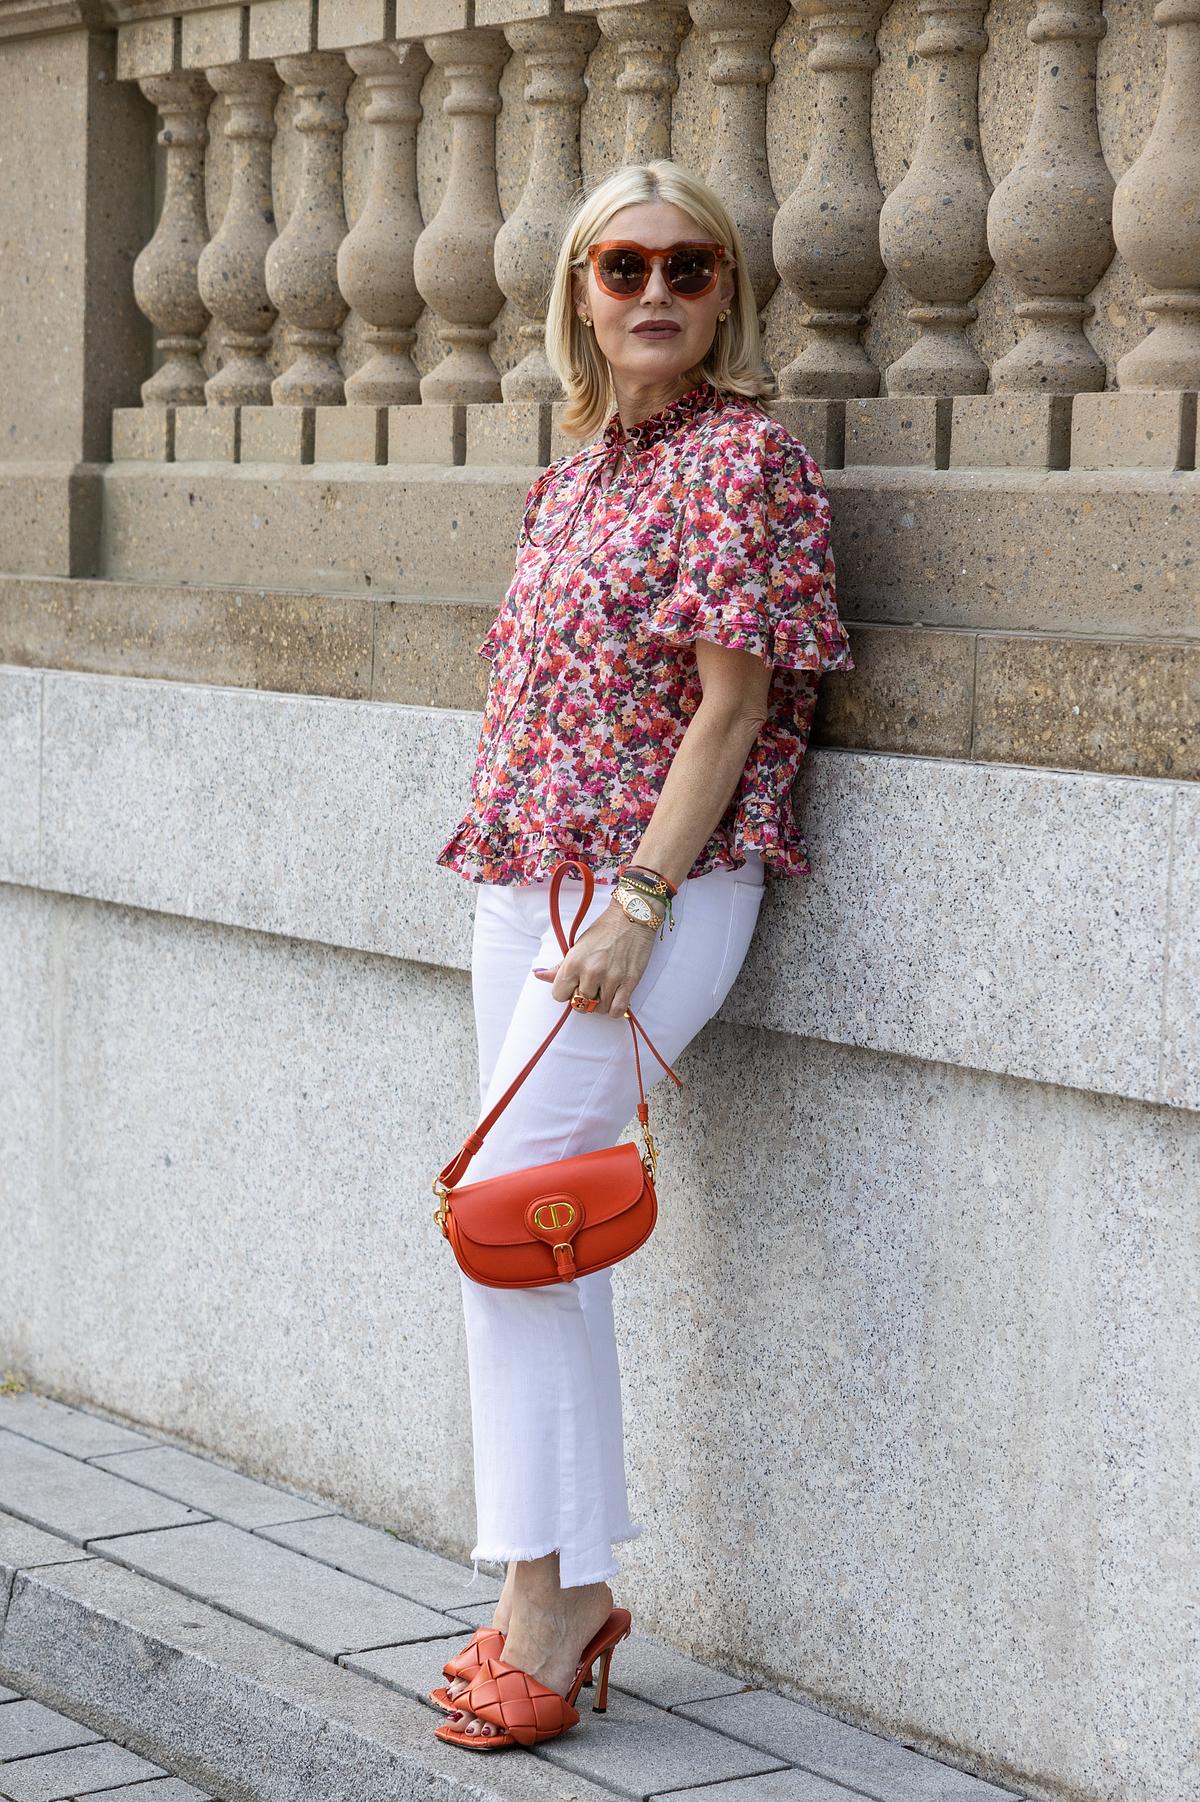 Lässig-elegante Kombination: Weiße Jeans mit bunt gemusterter Bluse, in der Rot-Töne dominieren. Auch die Accessoires und Schuhe sind in Rot gehalten.